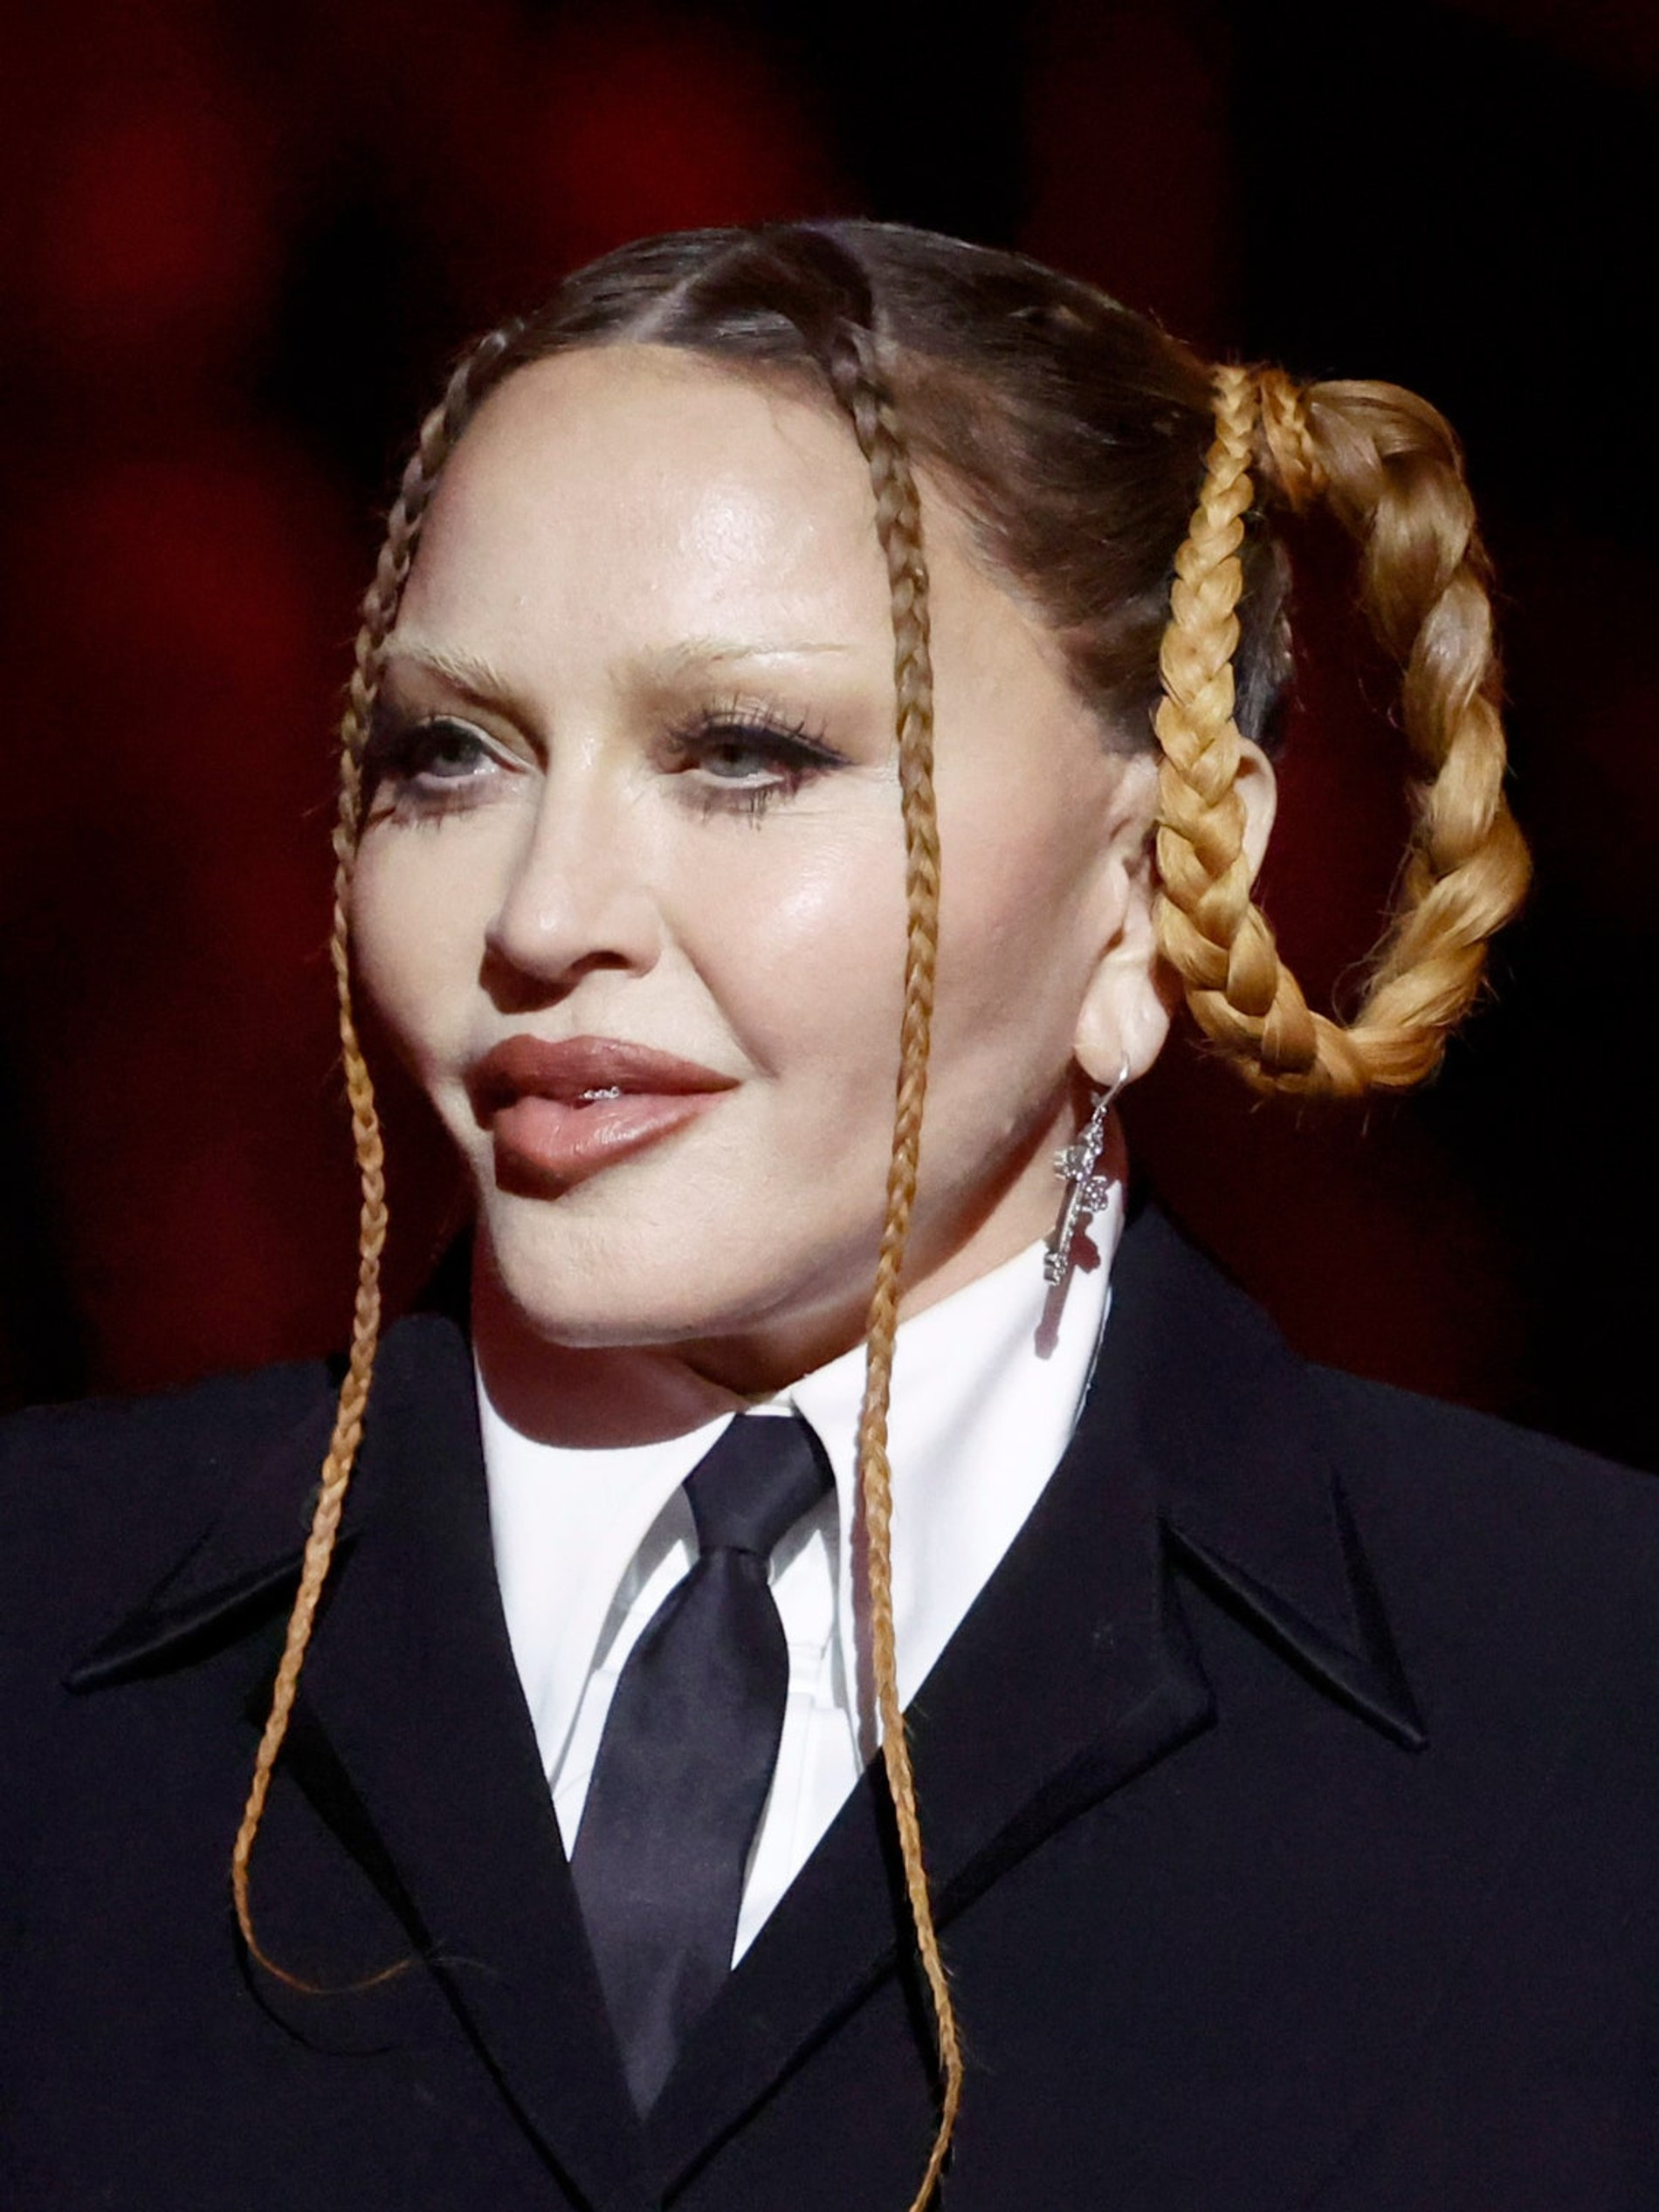 Мадонна на церемонии вручения «Грэмми»
Фото: Getty